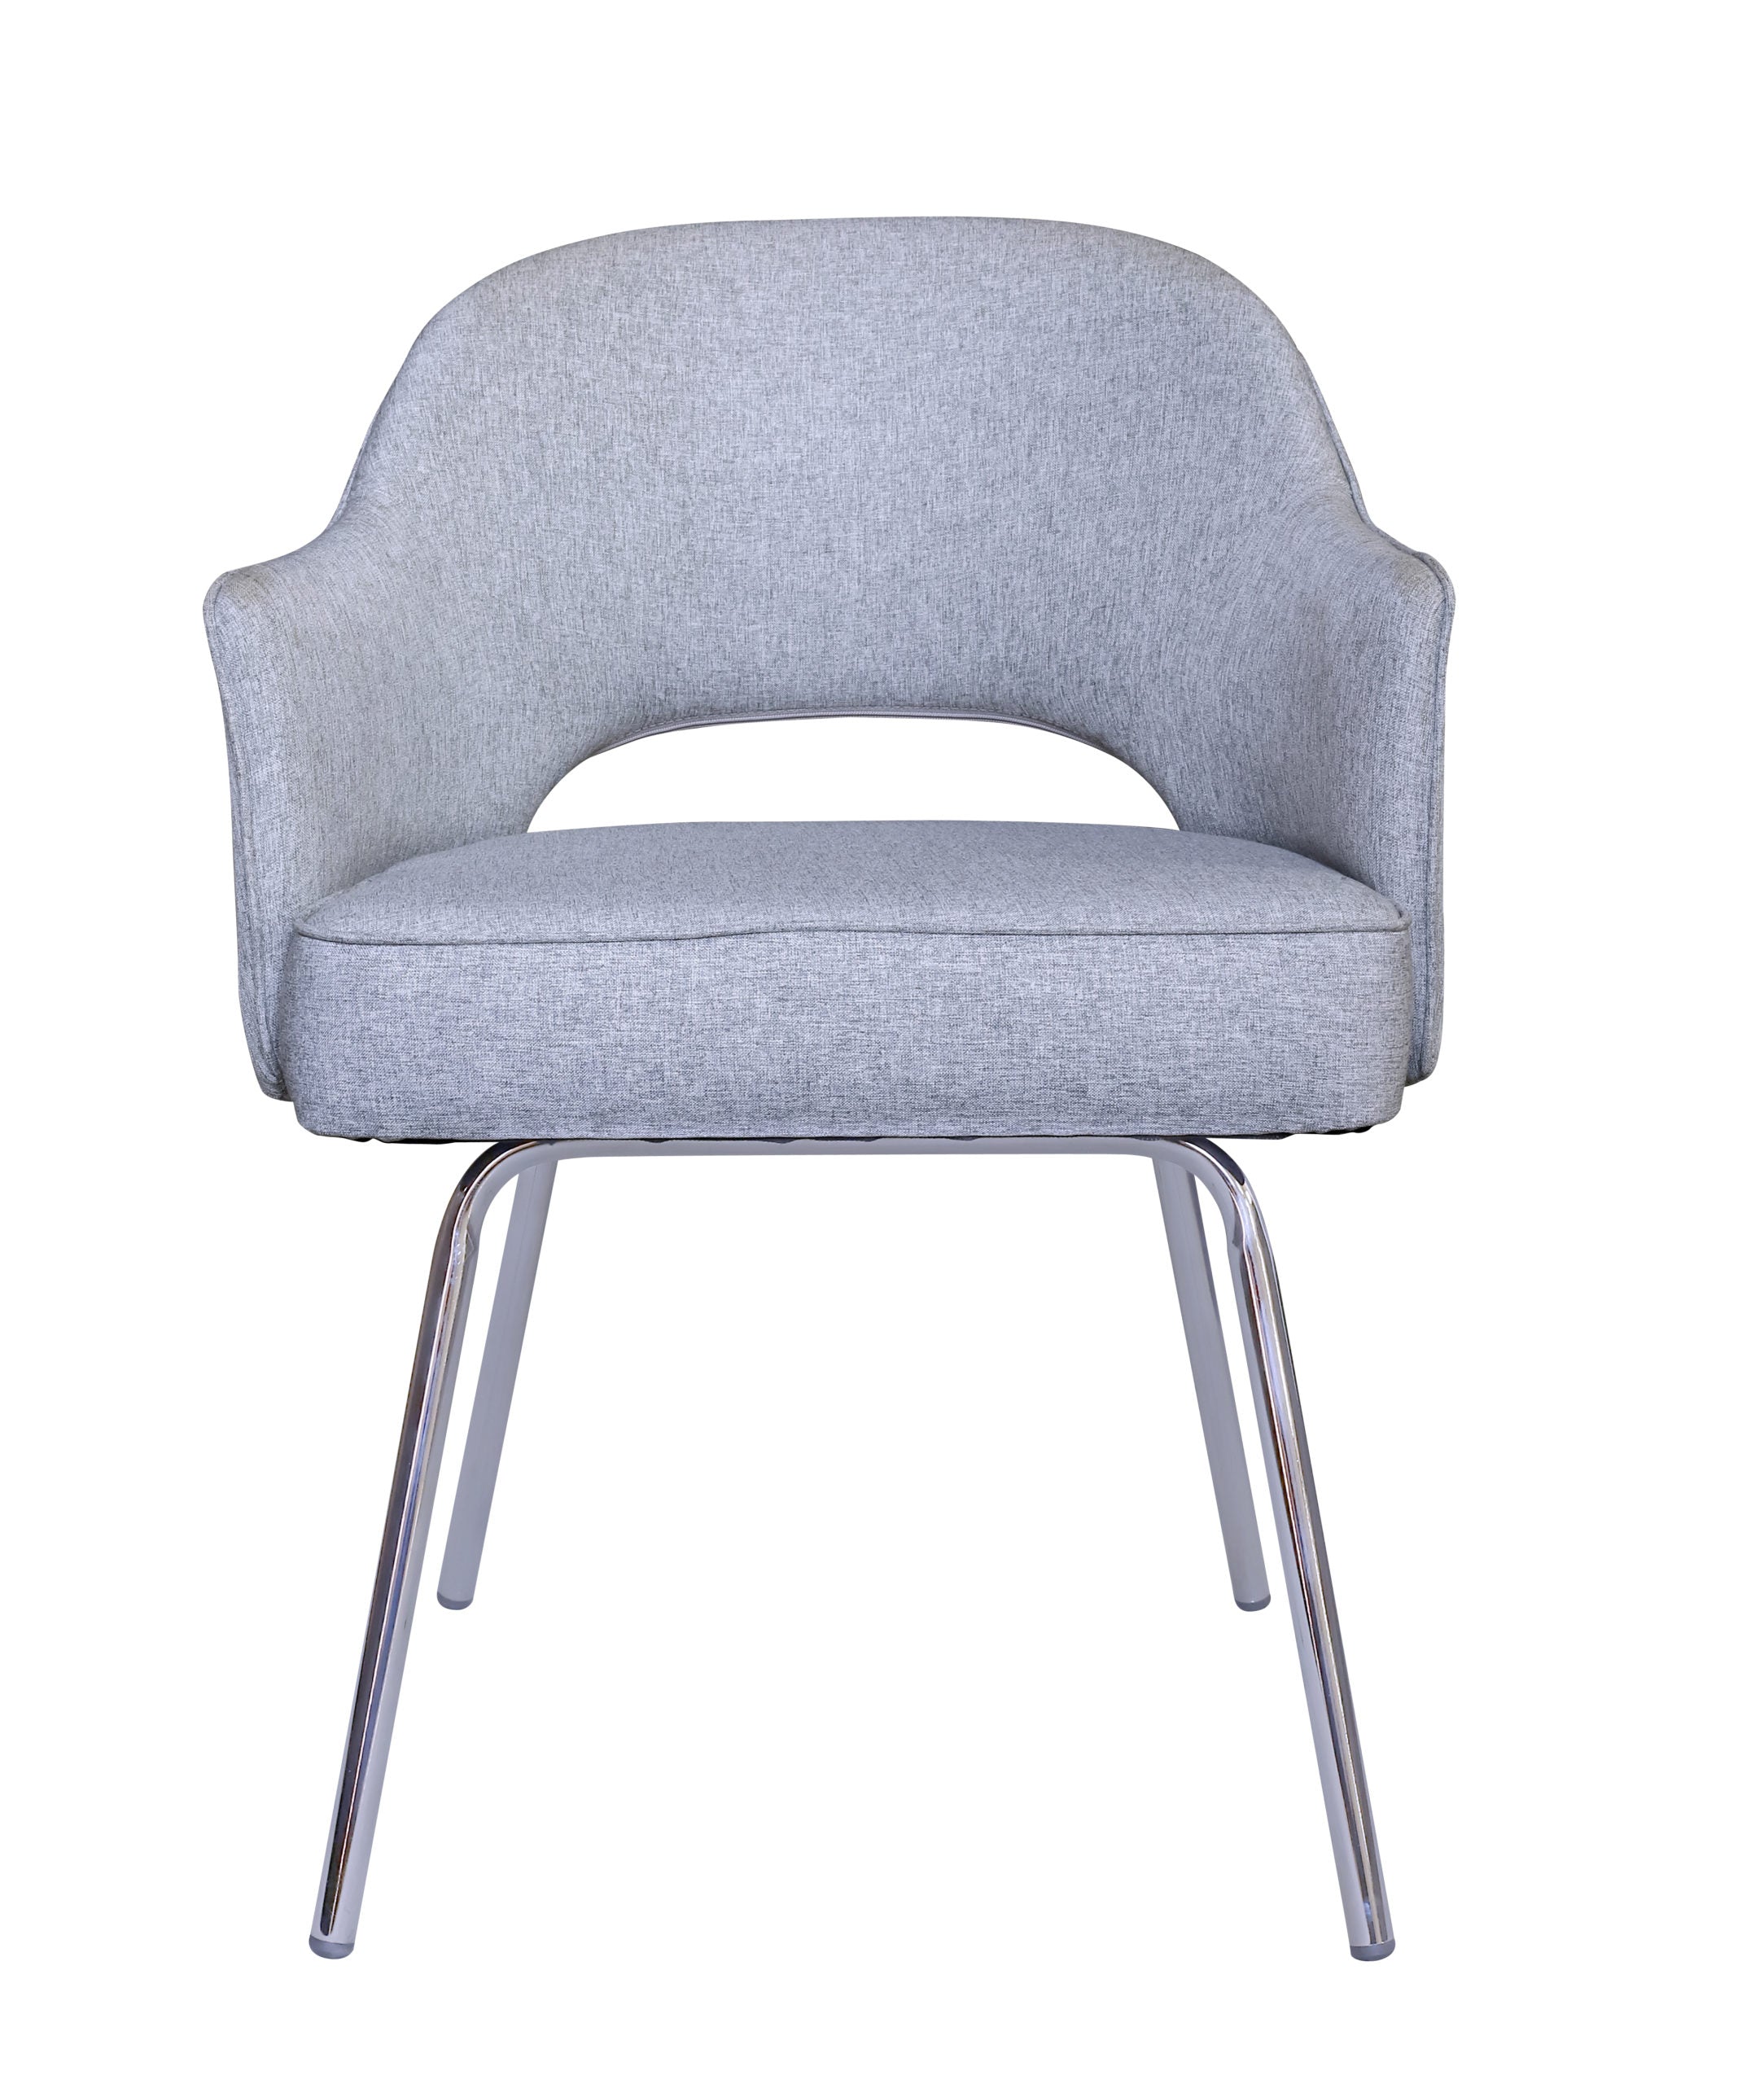 B489C-GR - Granite Linen Guest Chair by Boss